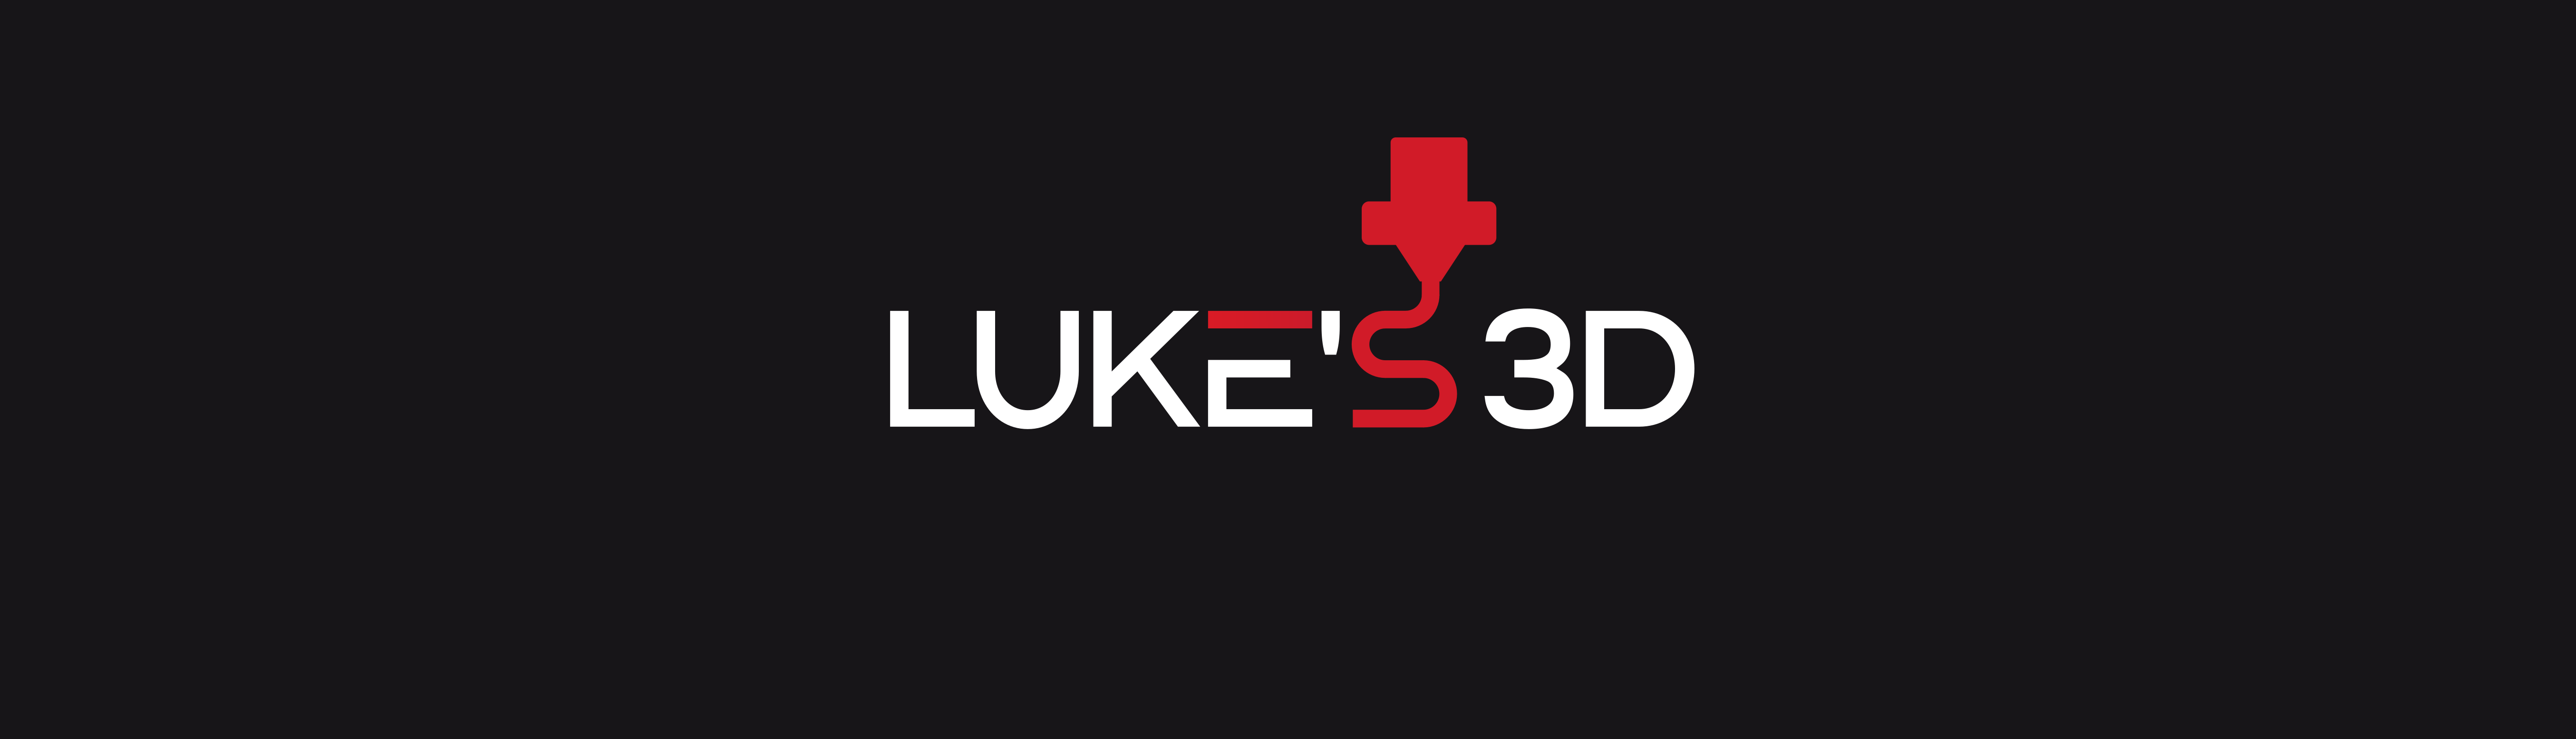 Lukes_3D_logo.png